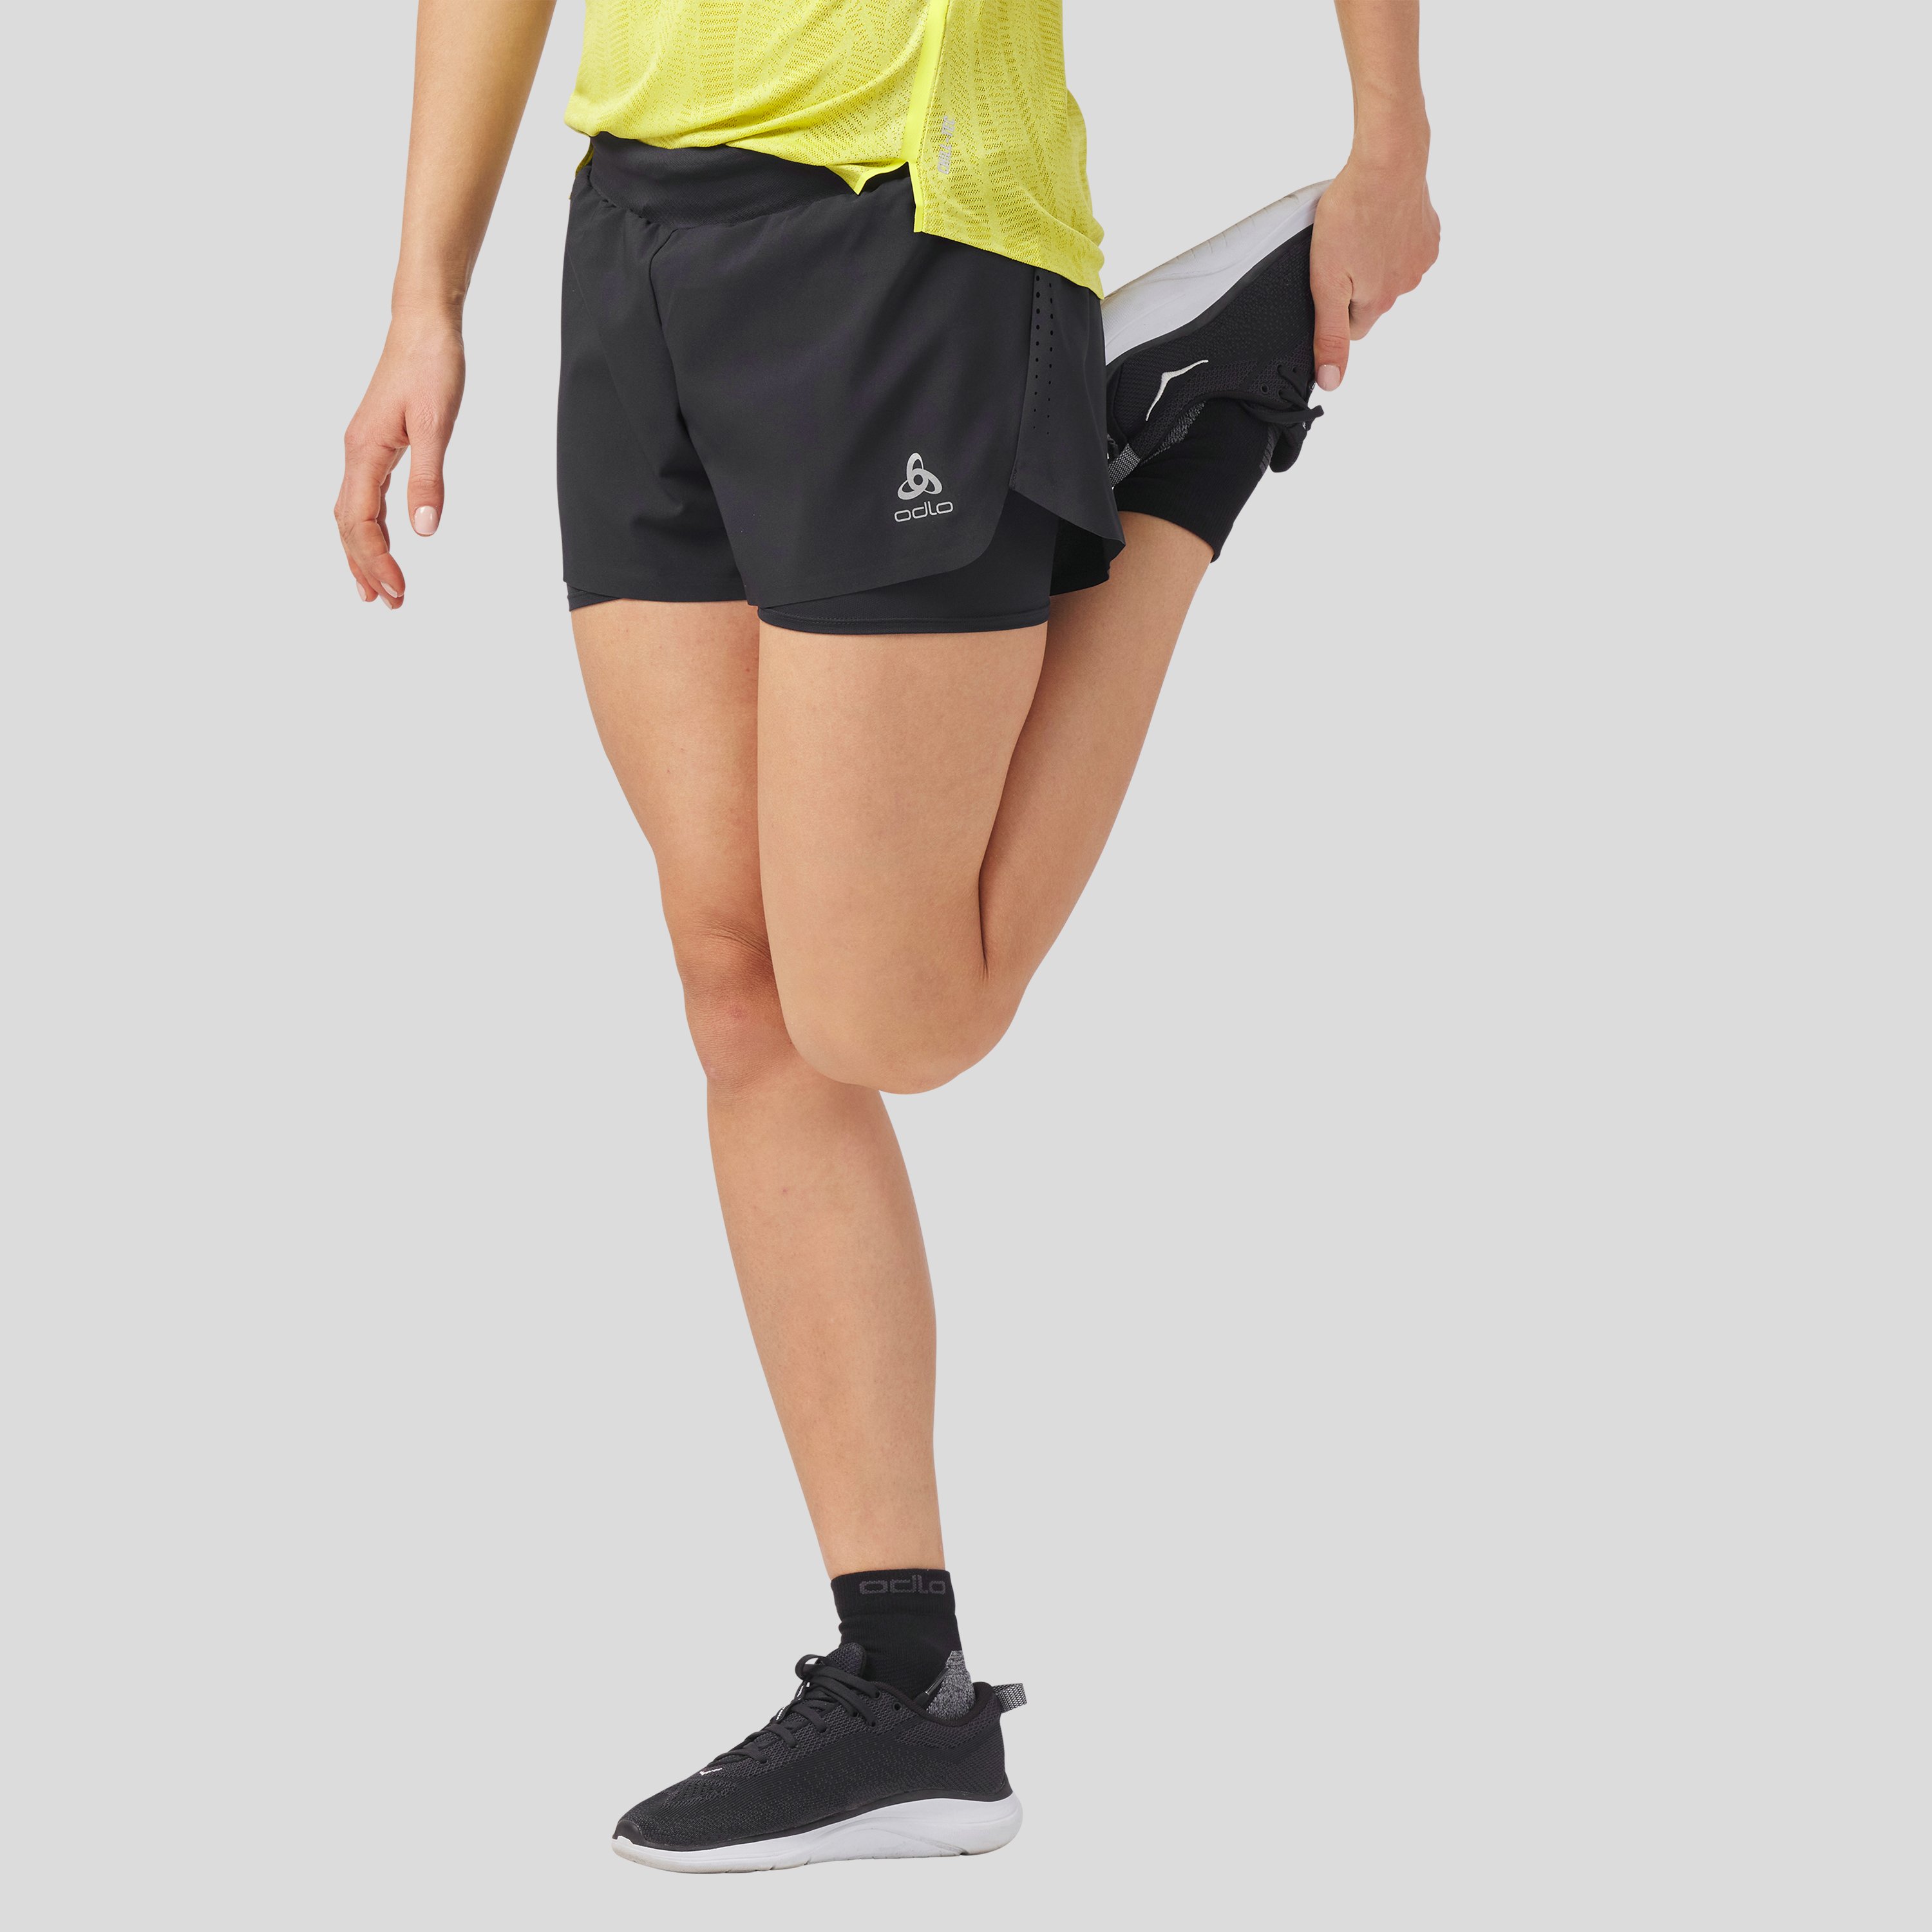 ODLO Zeroweight 2-in-1 Shorts für Damen, XL, schwarz